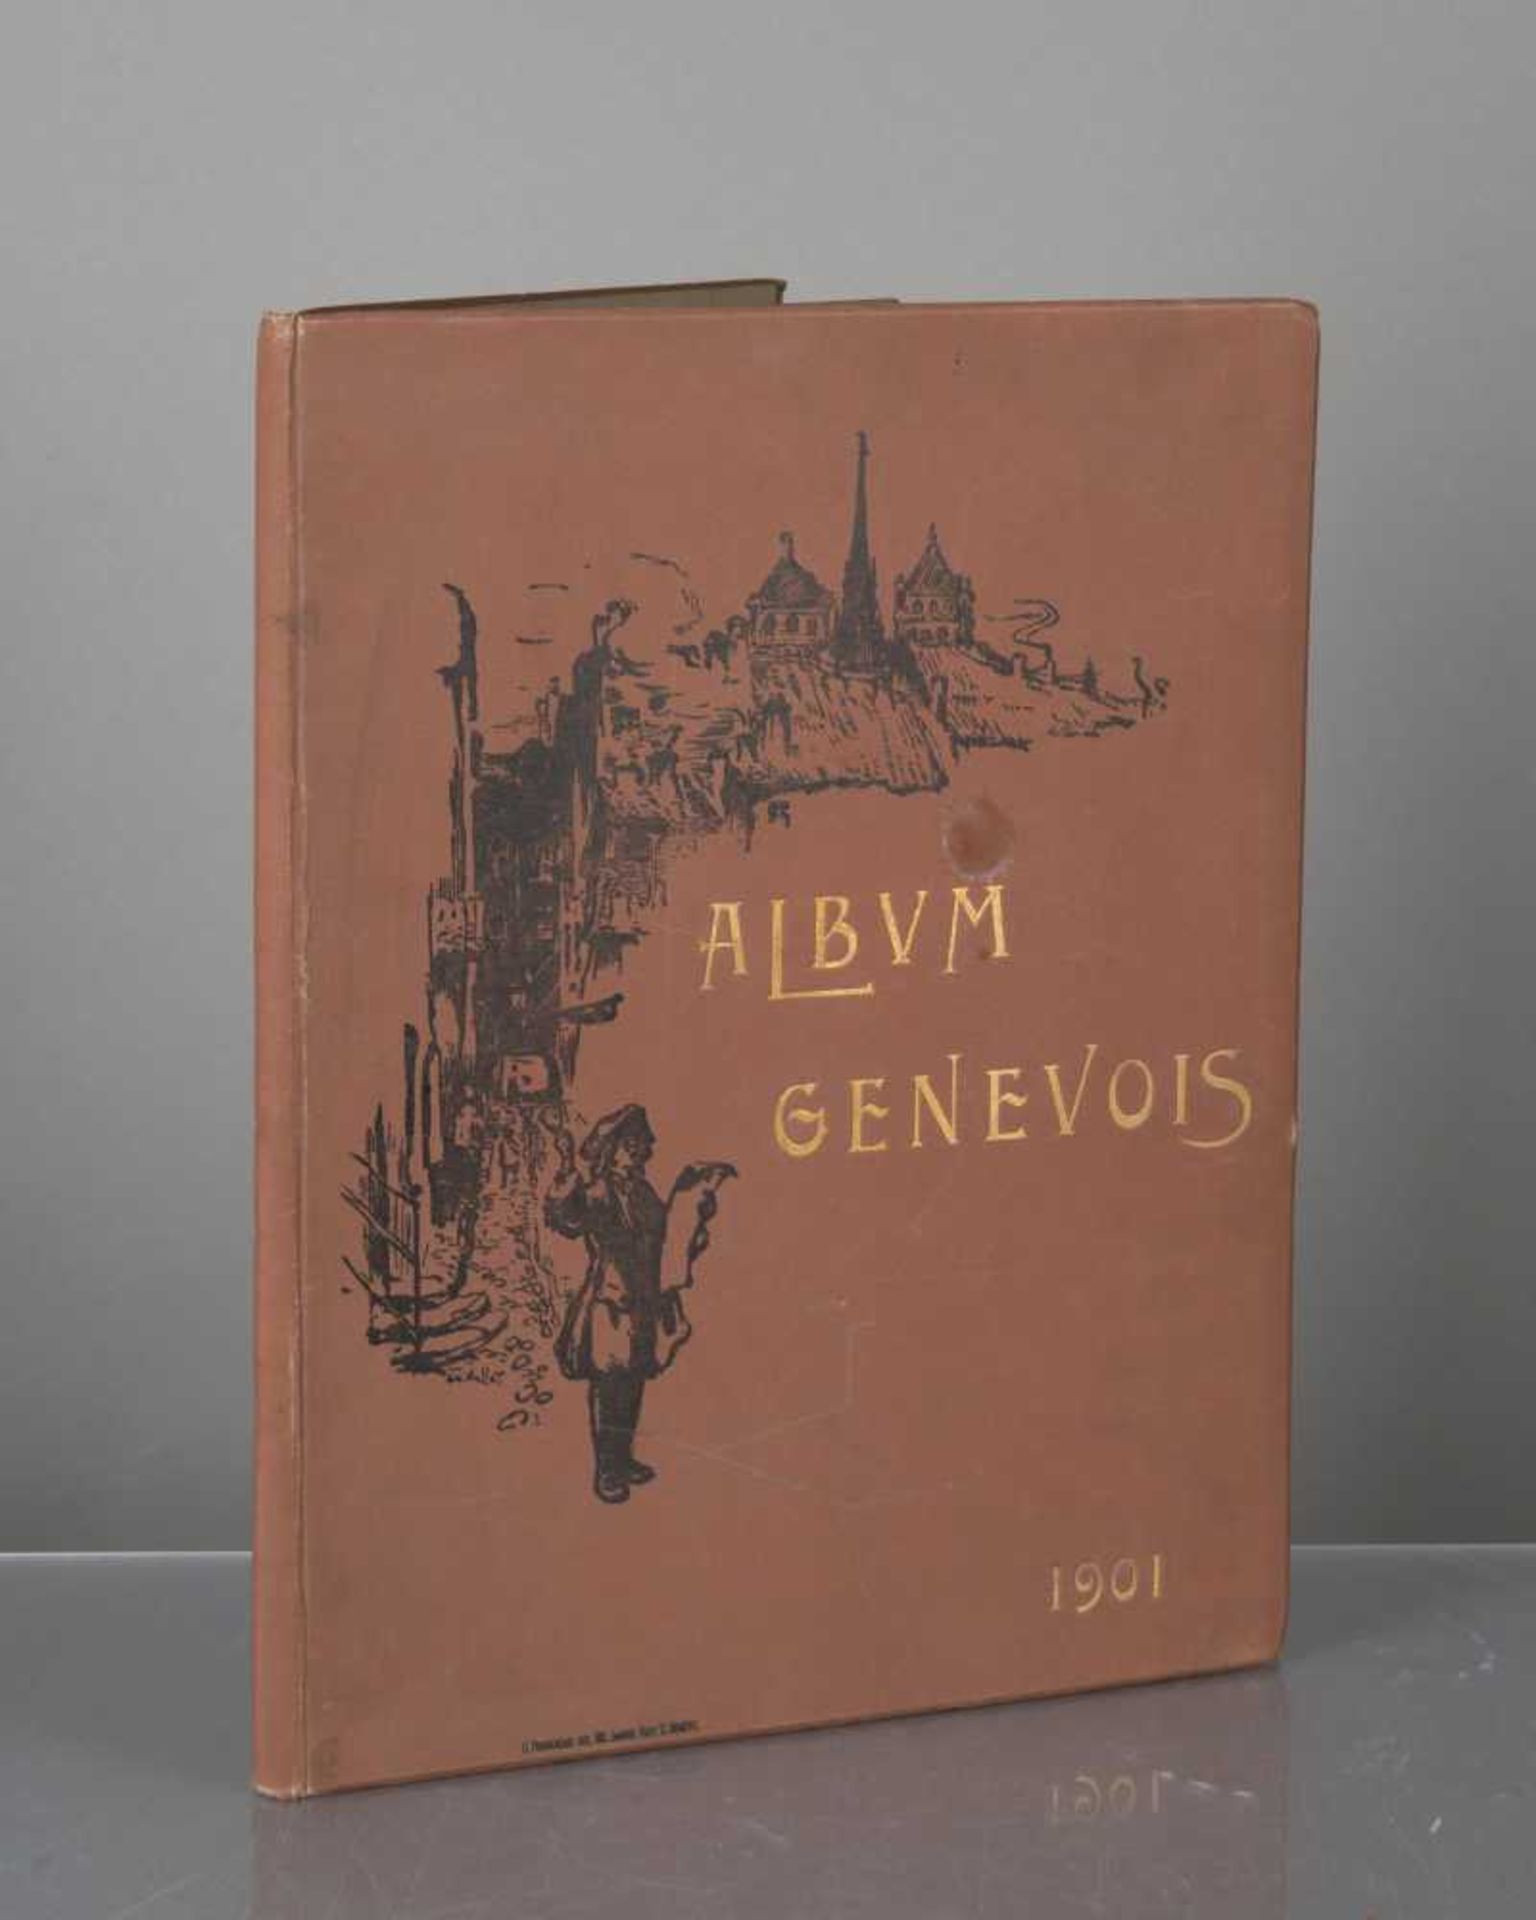 Album genevois de dessins originaux de Ed. Vallet, G. De Beaumont, Ed. Baud, H.C. Forestier, D.